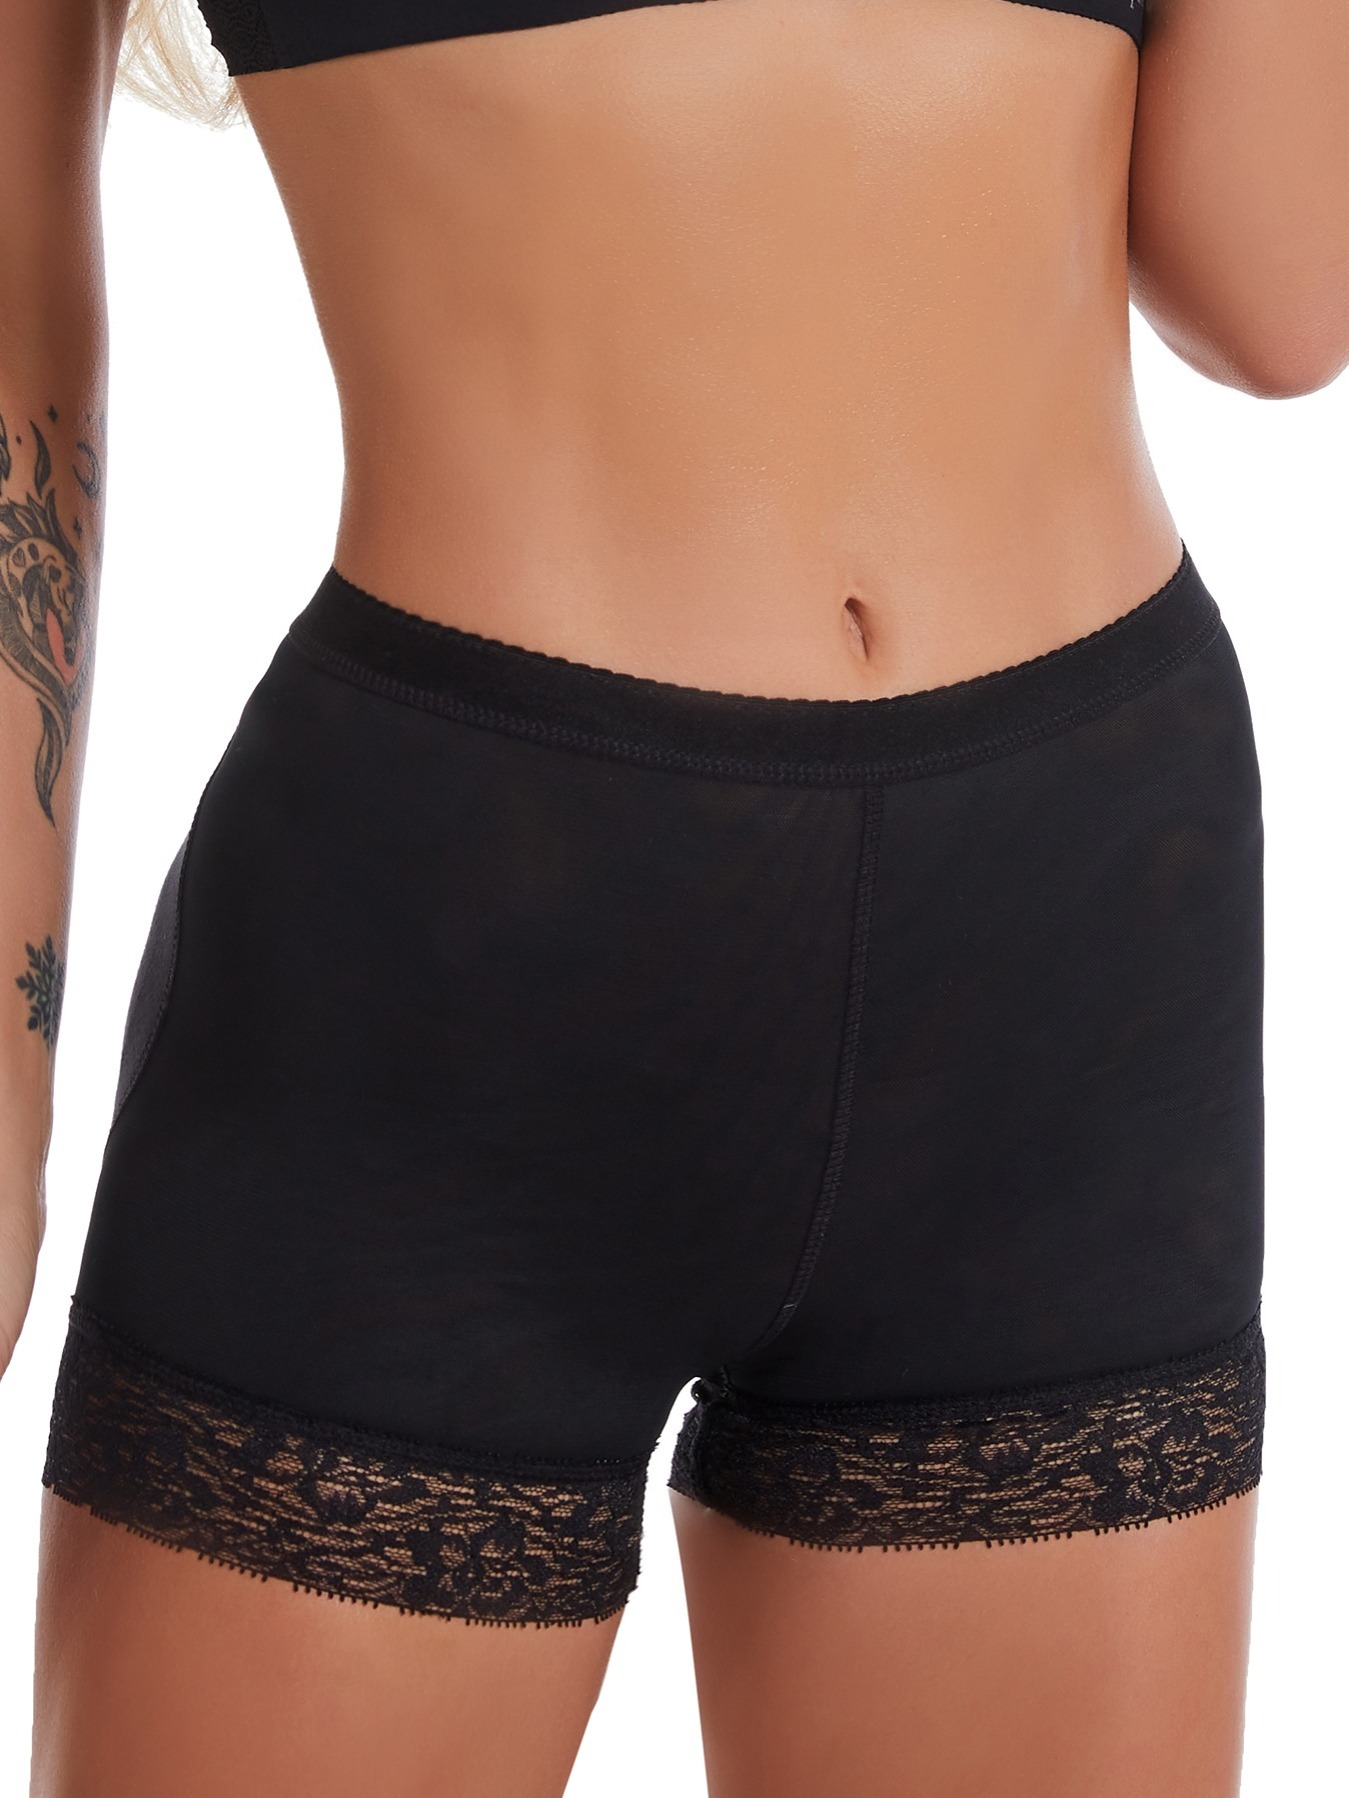 US Booty Shaper Padded Underwear Pants Women's FAKE ASS Butt Lifter Hip  Enhancer 